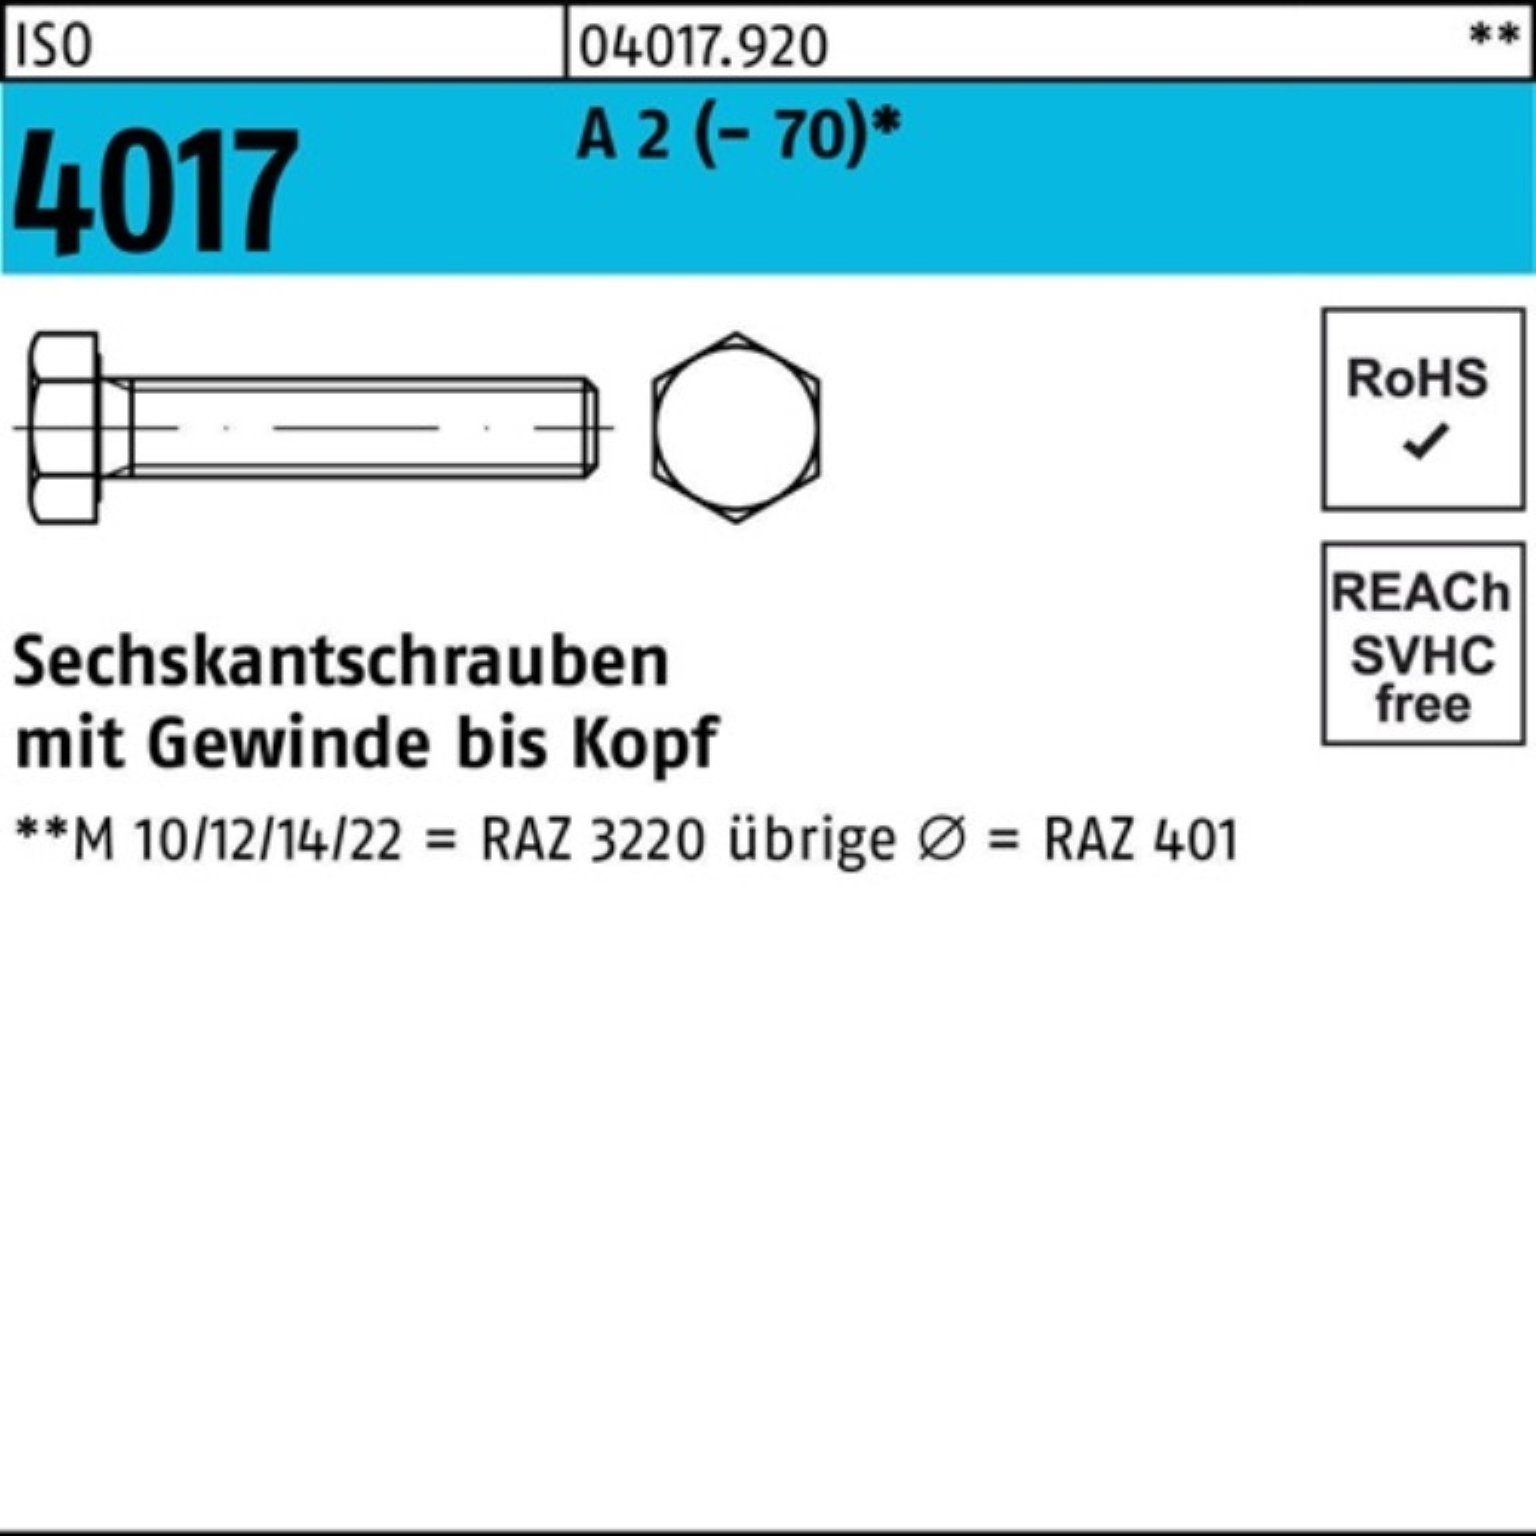 Bufab Sechskantschraube 100er Pack Sechskantschraube ISO 4017 VG M4x 22 A 2 (70) 100 Stück